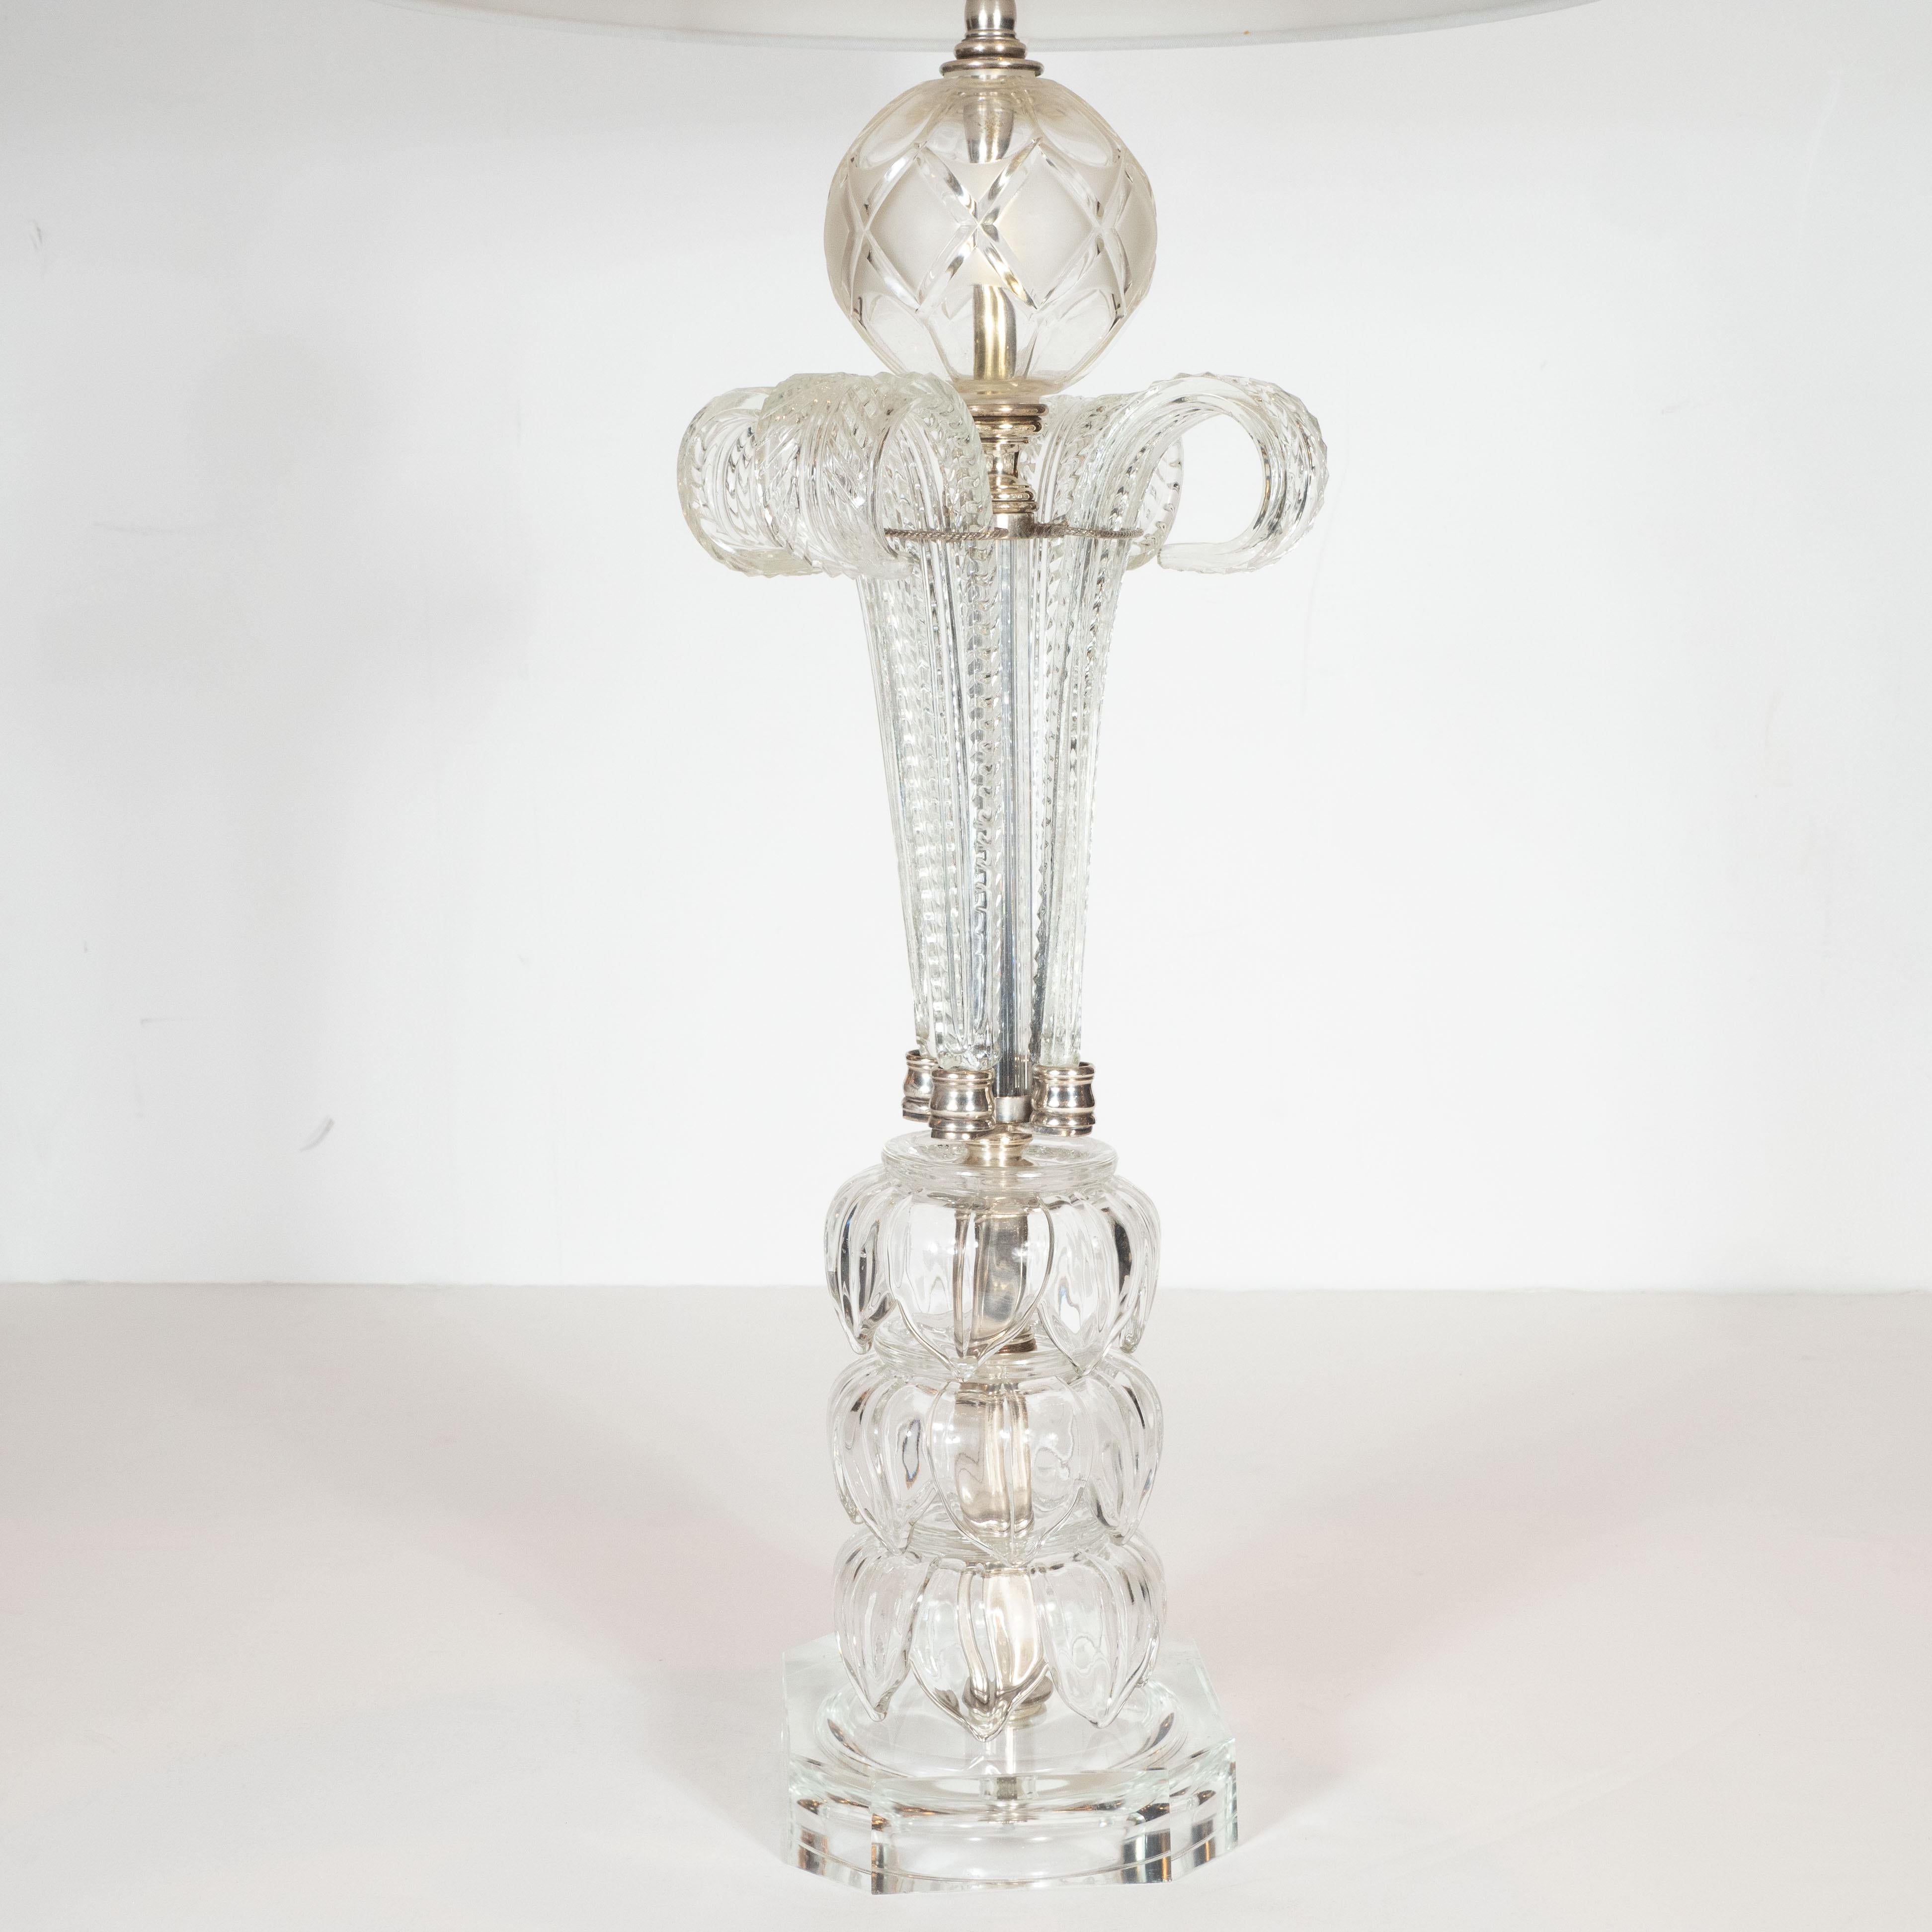 Cette exquise lampe de table Hollywood Regency a été réalisée aux États-Unis, vers 1940. Elle présente trois formes ovoïdes volumétriques superposées avec des détails feuillus gravés au sommet d'une base octogonale allongée d'où s'élèvent quatre